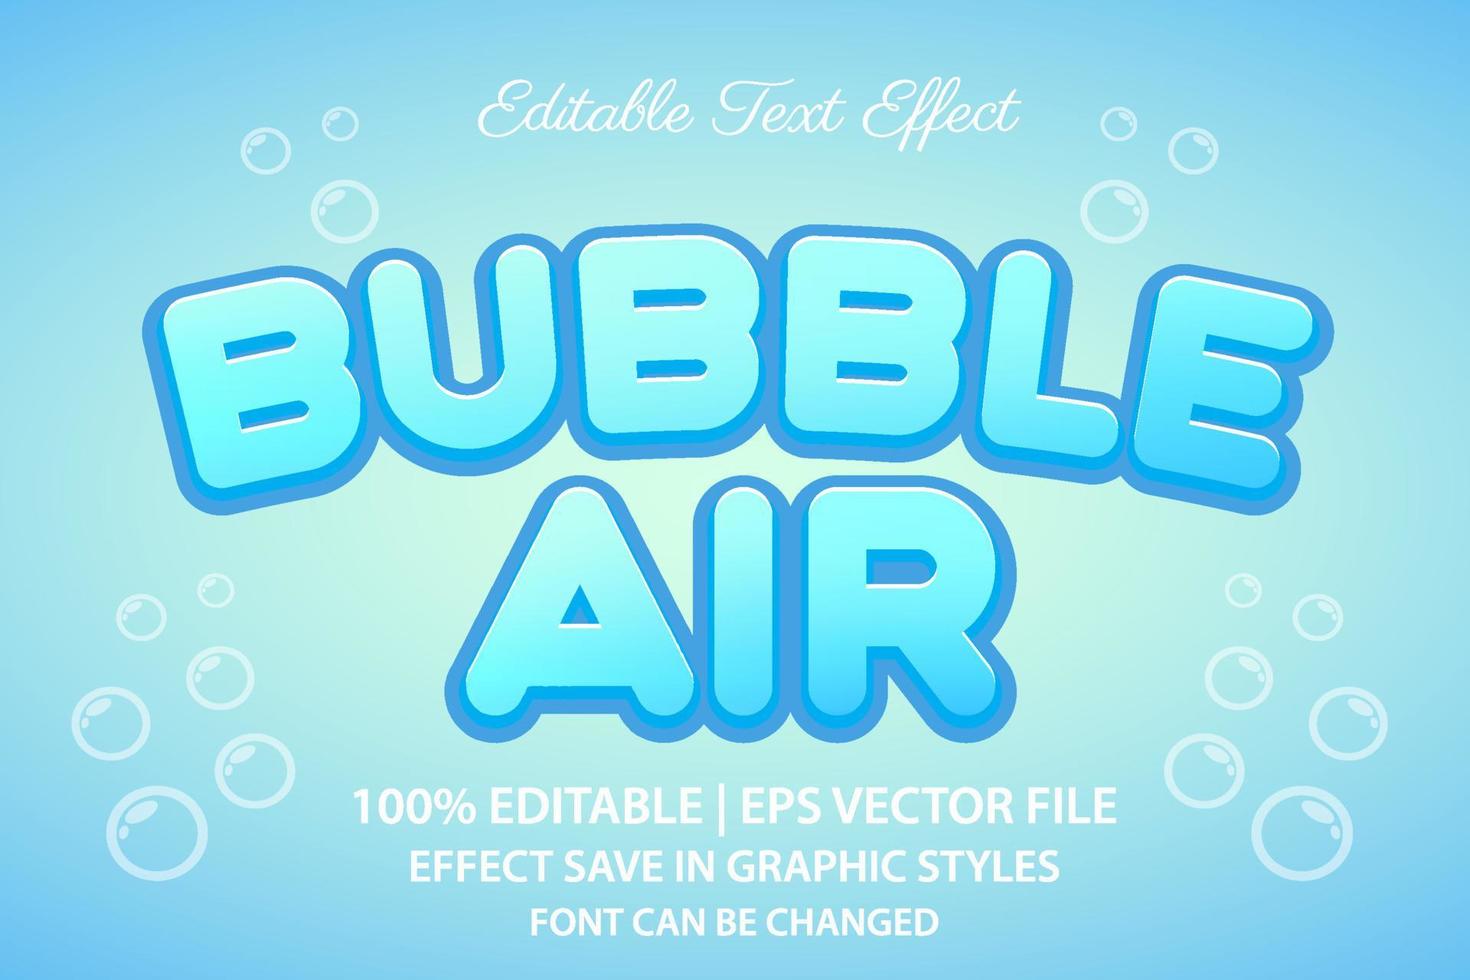 efecto de texto editable 3d burbuja de aire vector